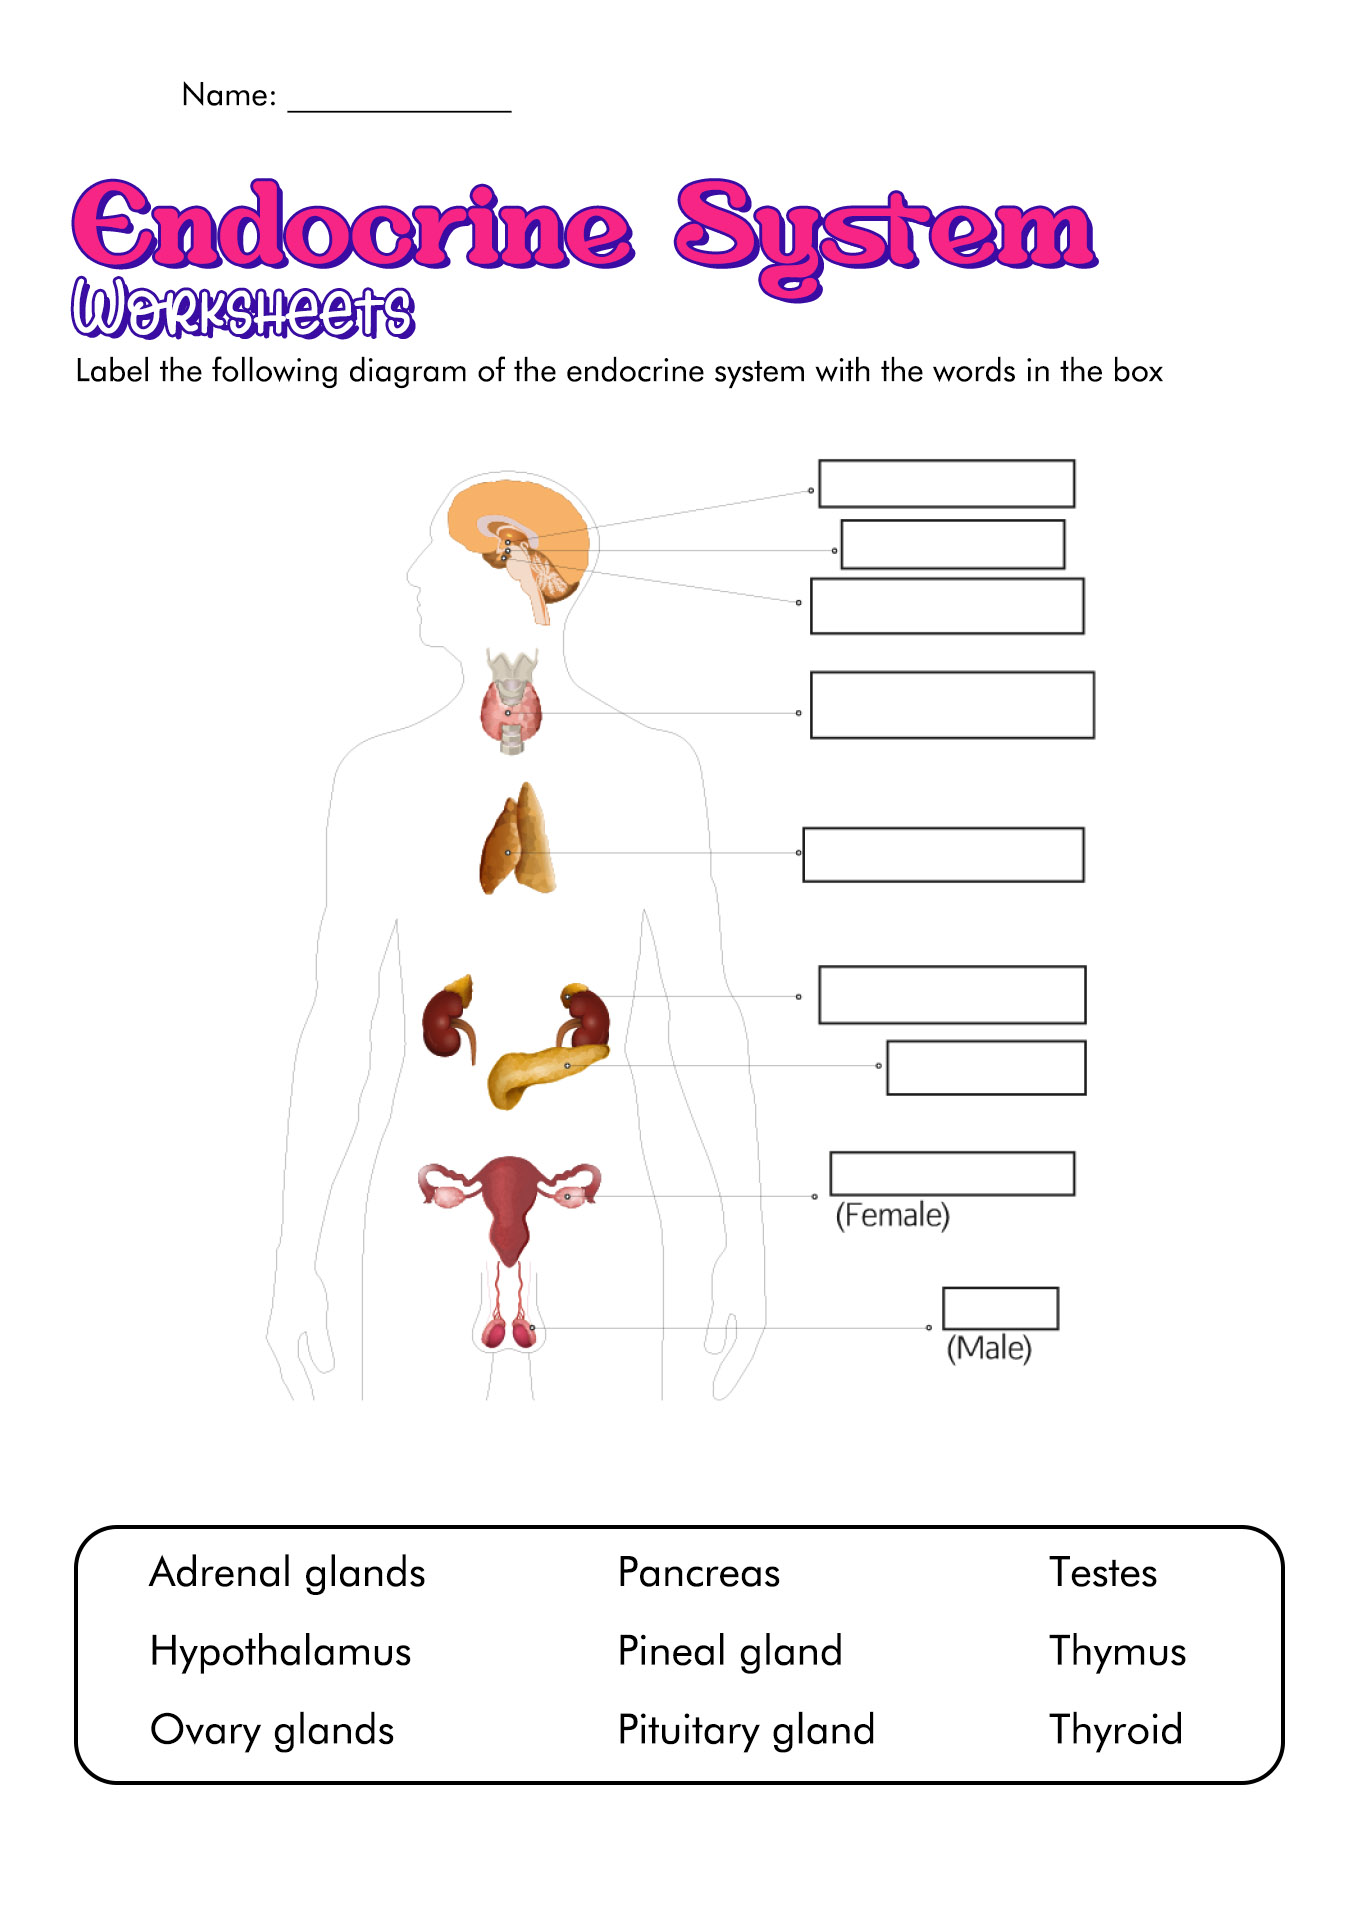 Endocrine System Worksheets Image